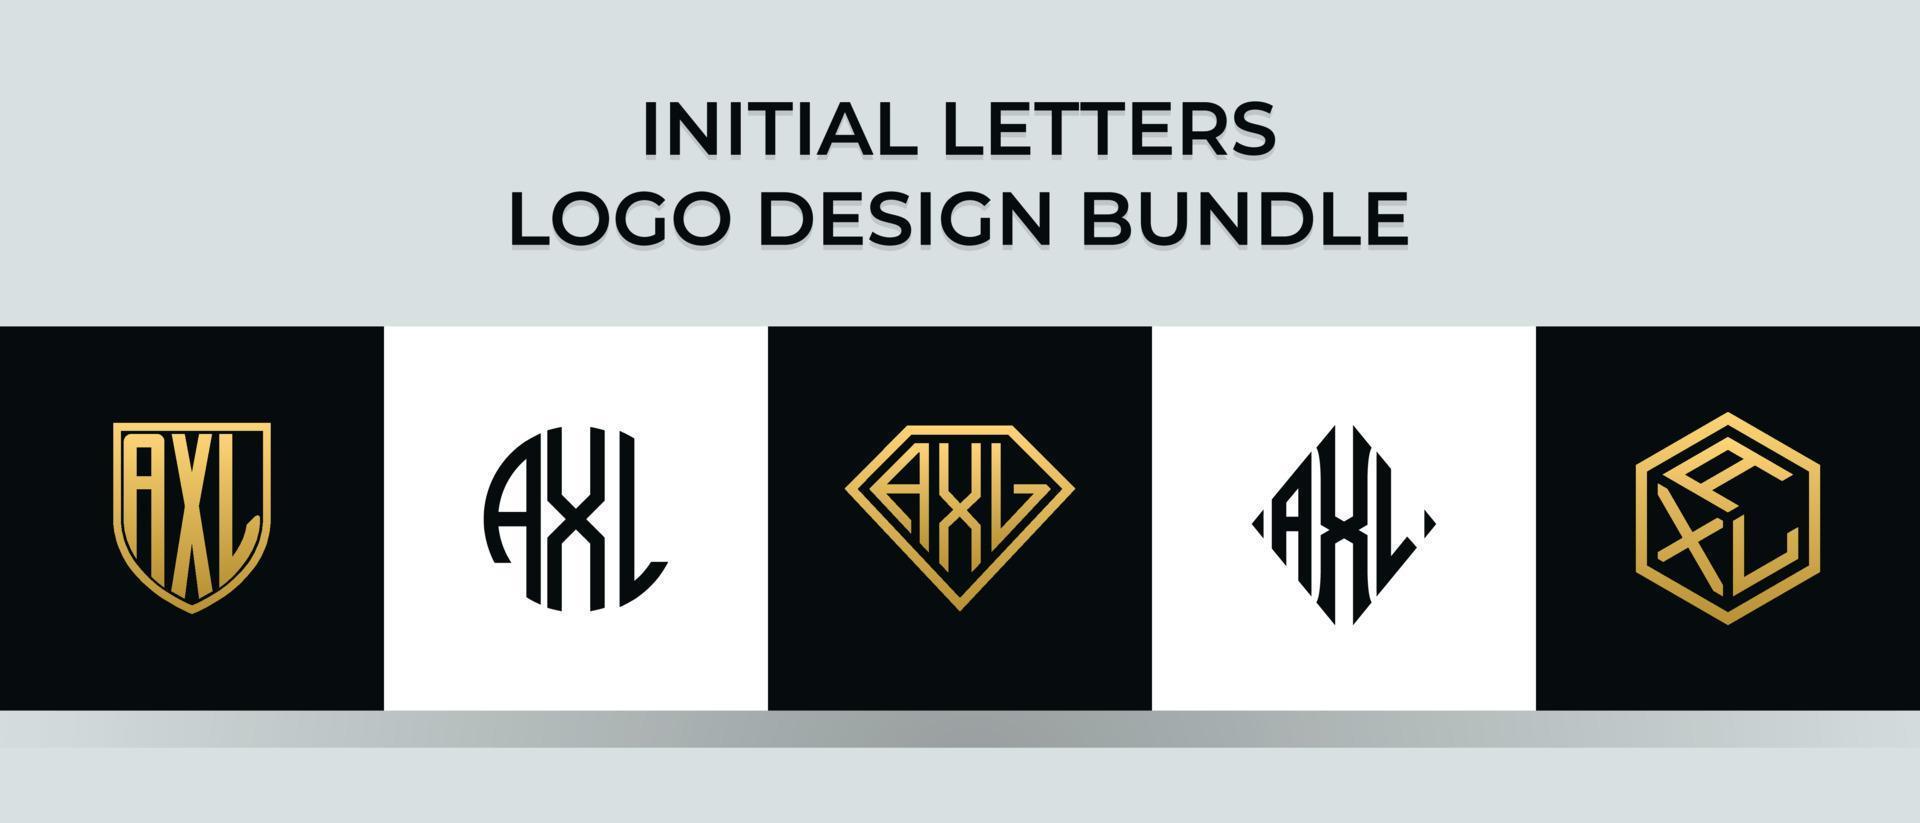 letras iniciales axl logo diseños paquete vector